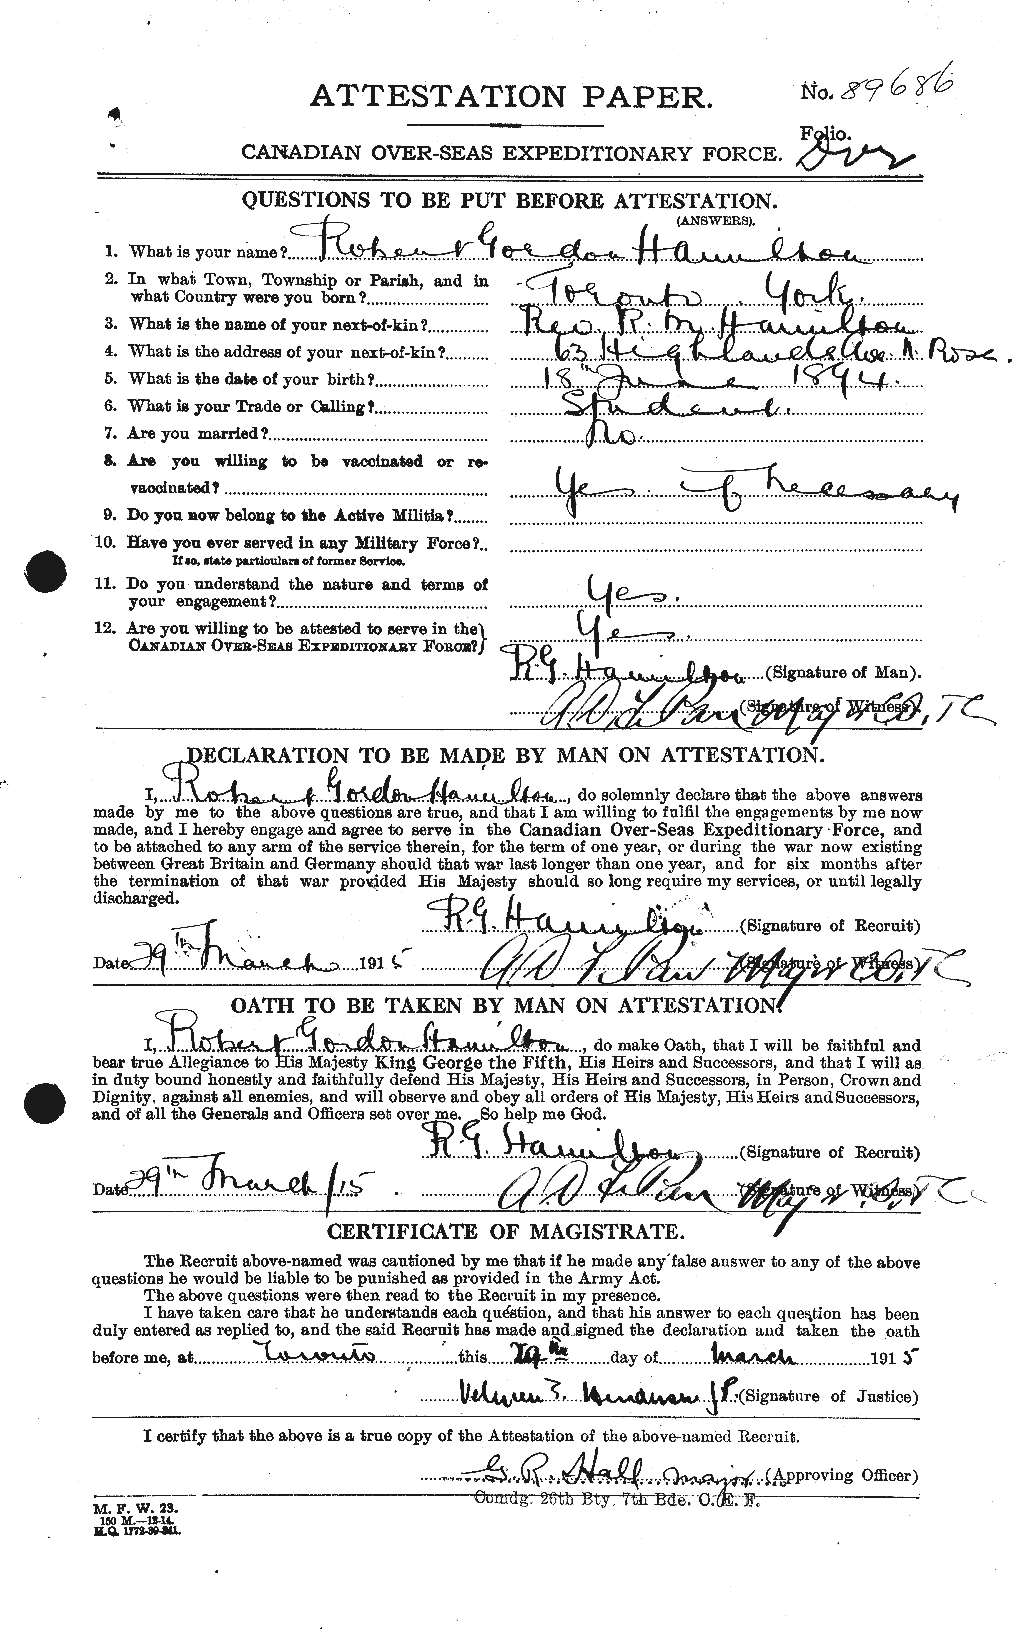 Dossiers du Personnel de la Première Guerre mondiale - CEC 373258a